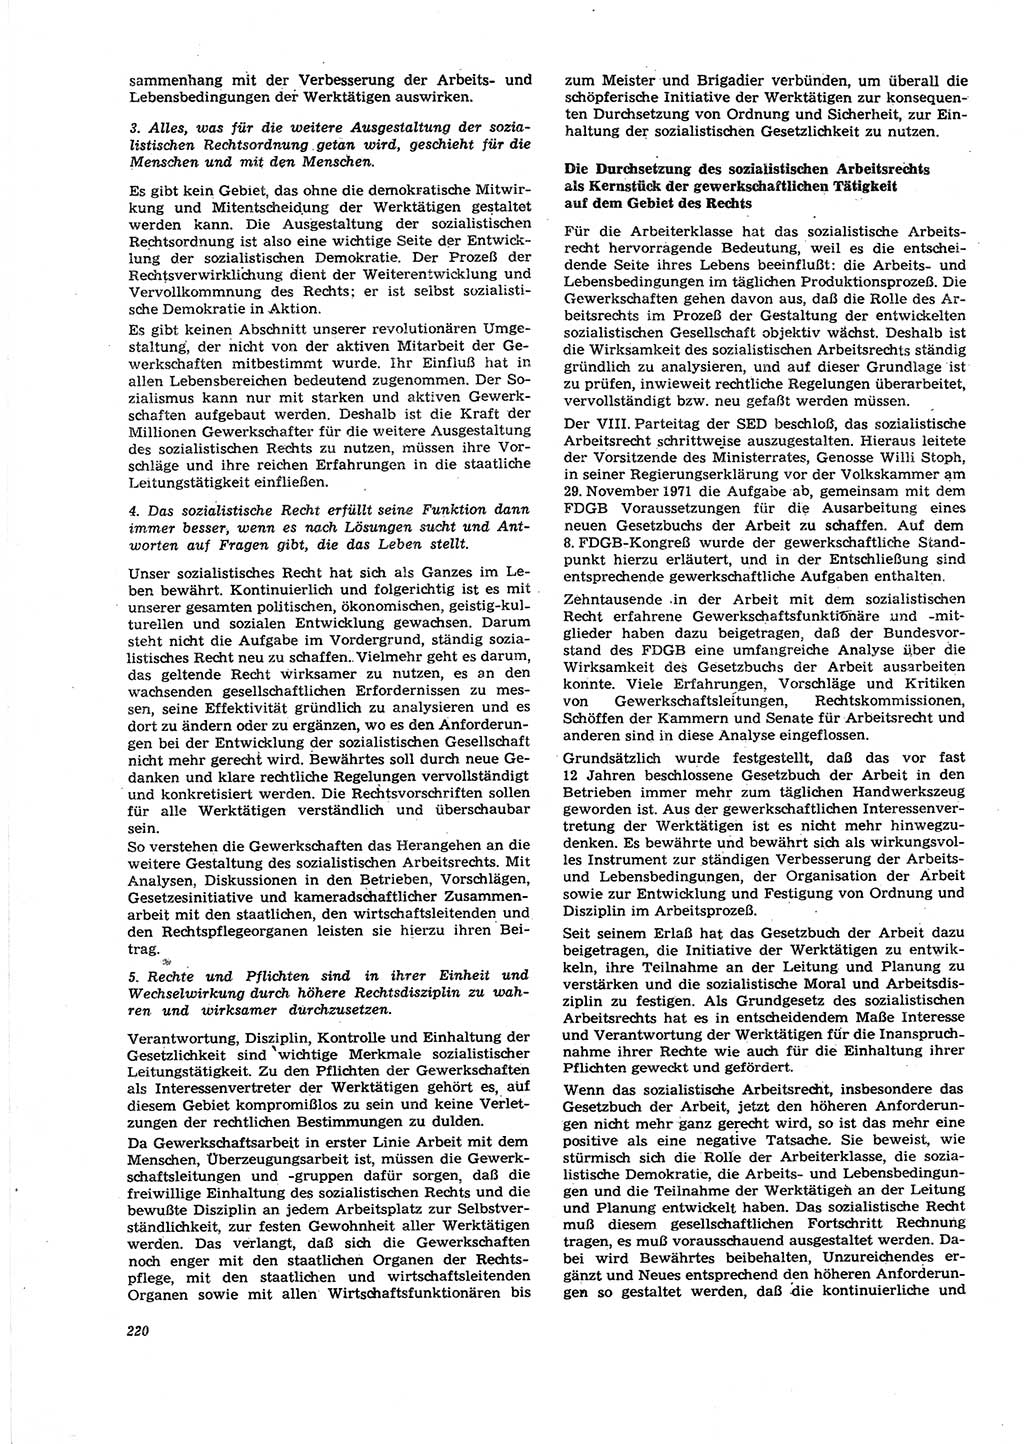 Neue Justiz (NJ), Zeitschrift für Recht und Rechtswissenschaft [Deutsche Demokratische Republik (DDR)], 27. Jahrgang 1973, Seite 220 (NJ DDR 1973, S. 220)